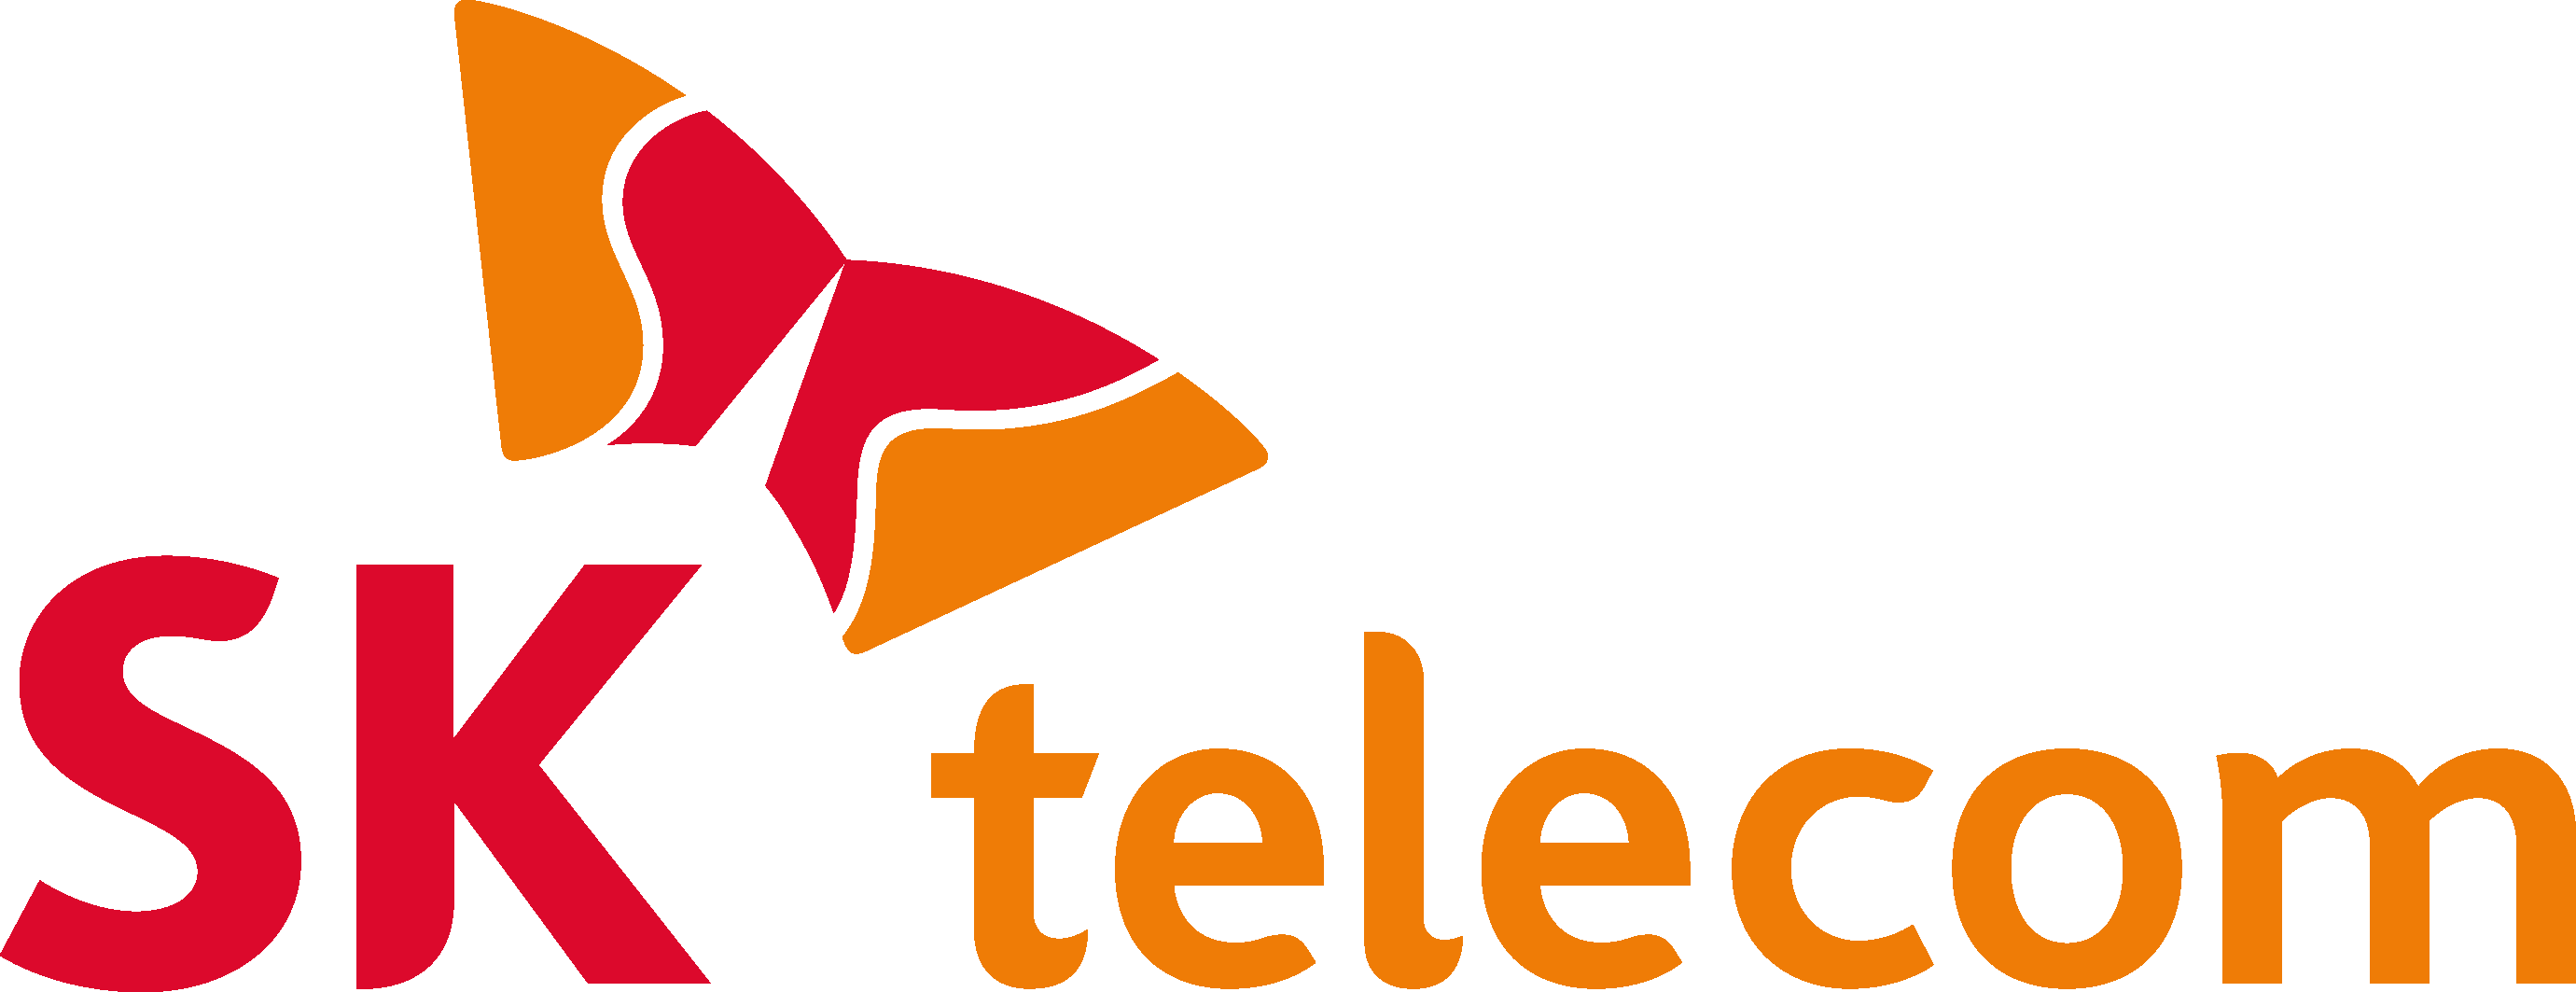 SK Telecom Logo png